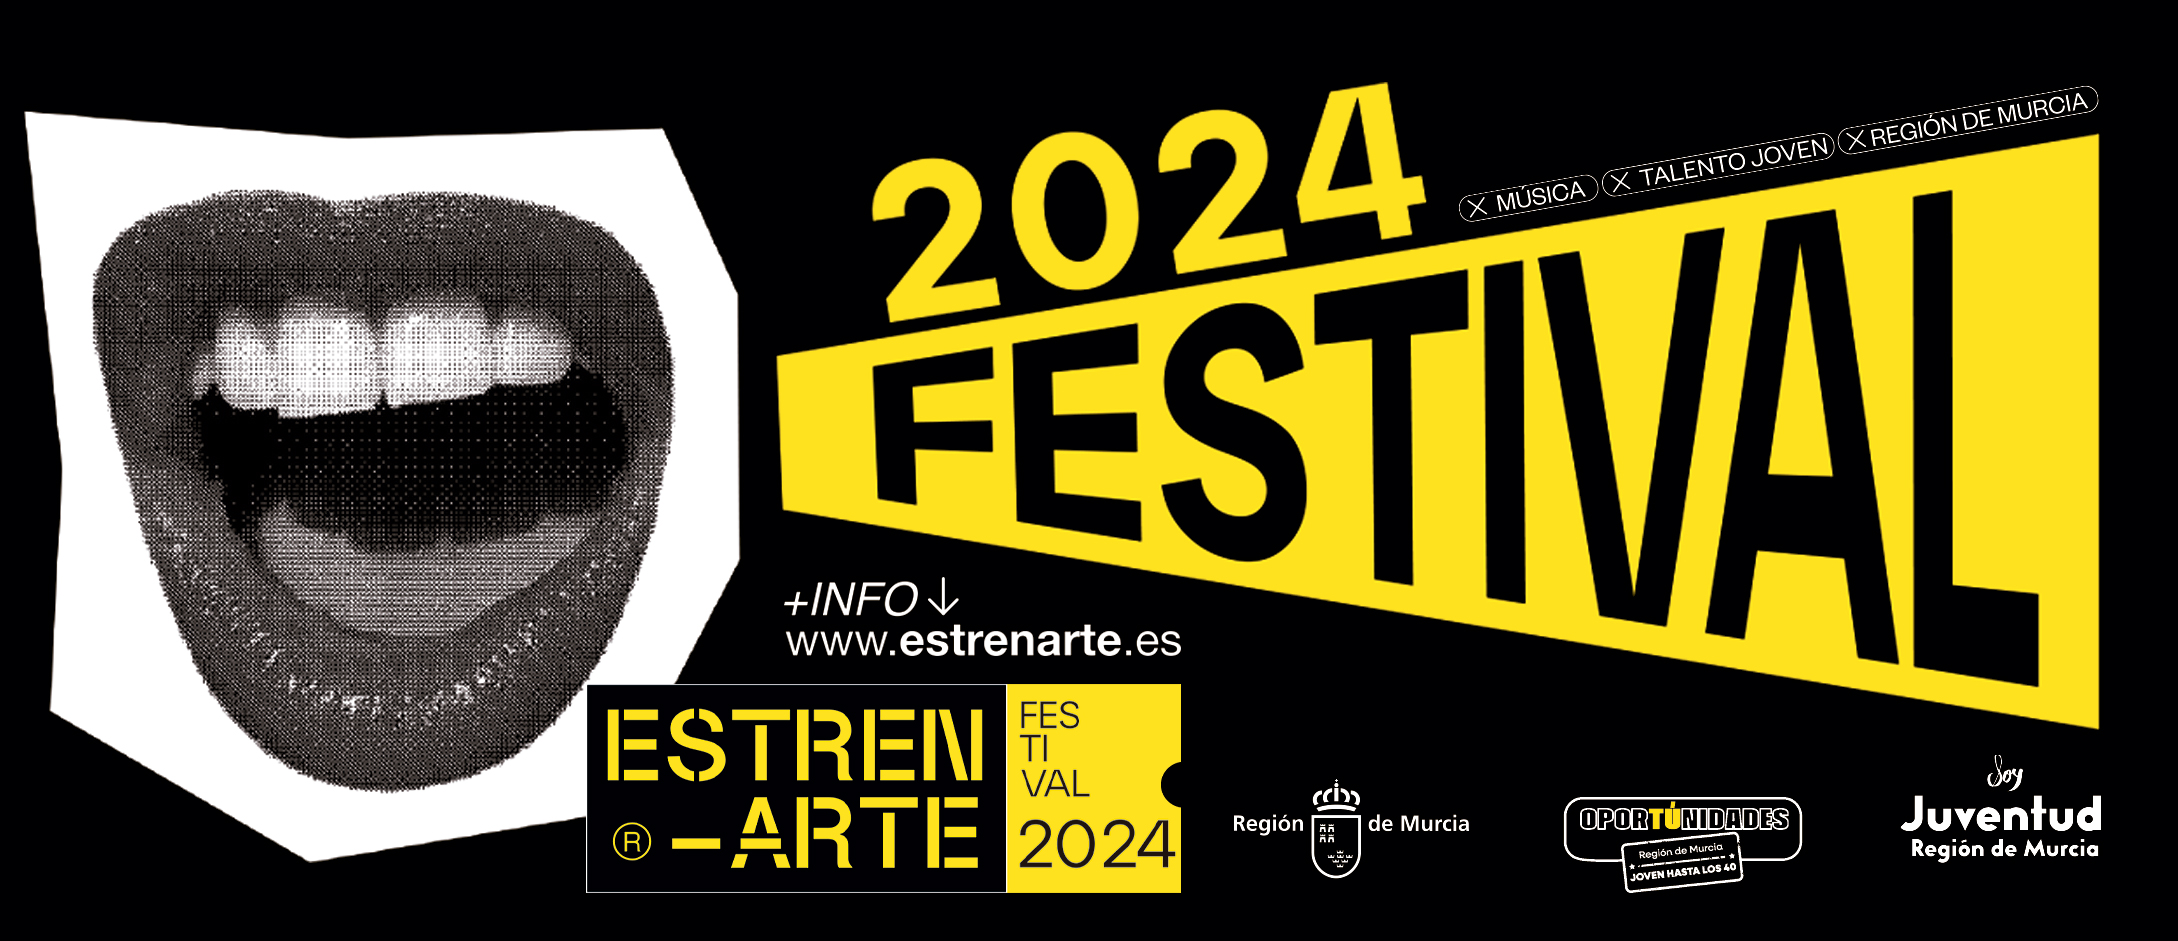 Festival Estrenarte 2024